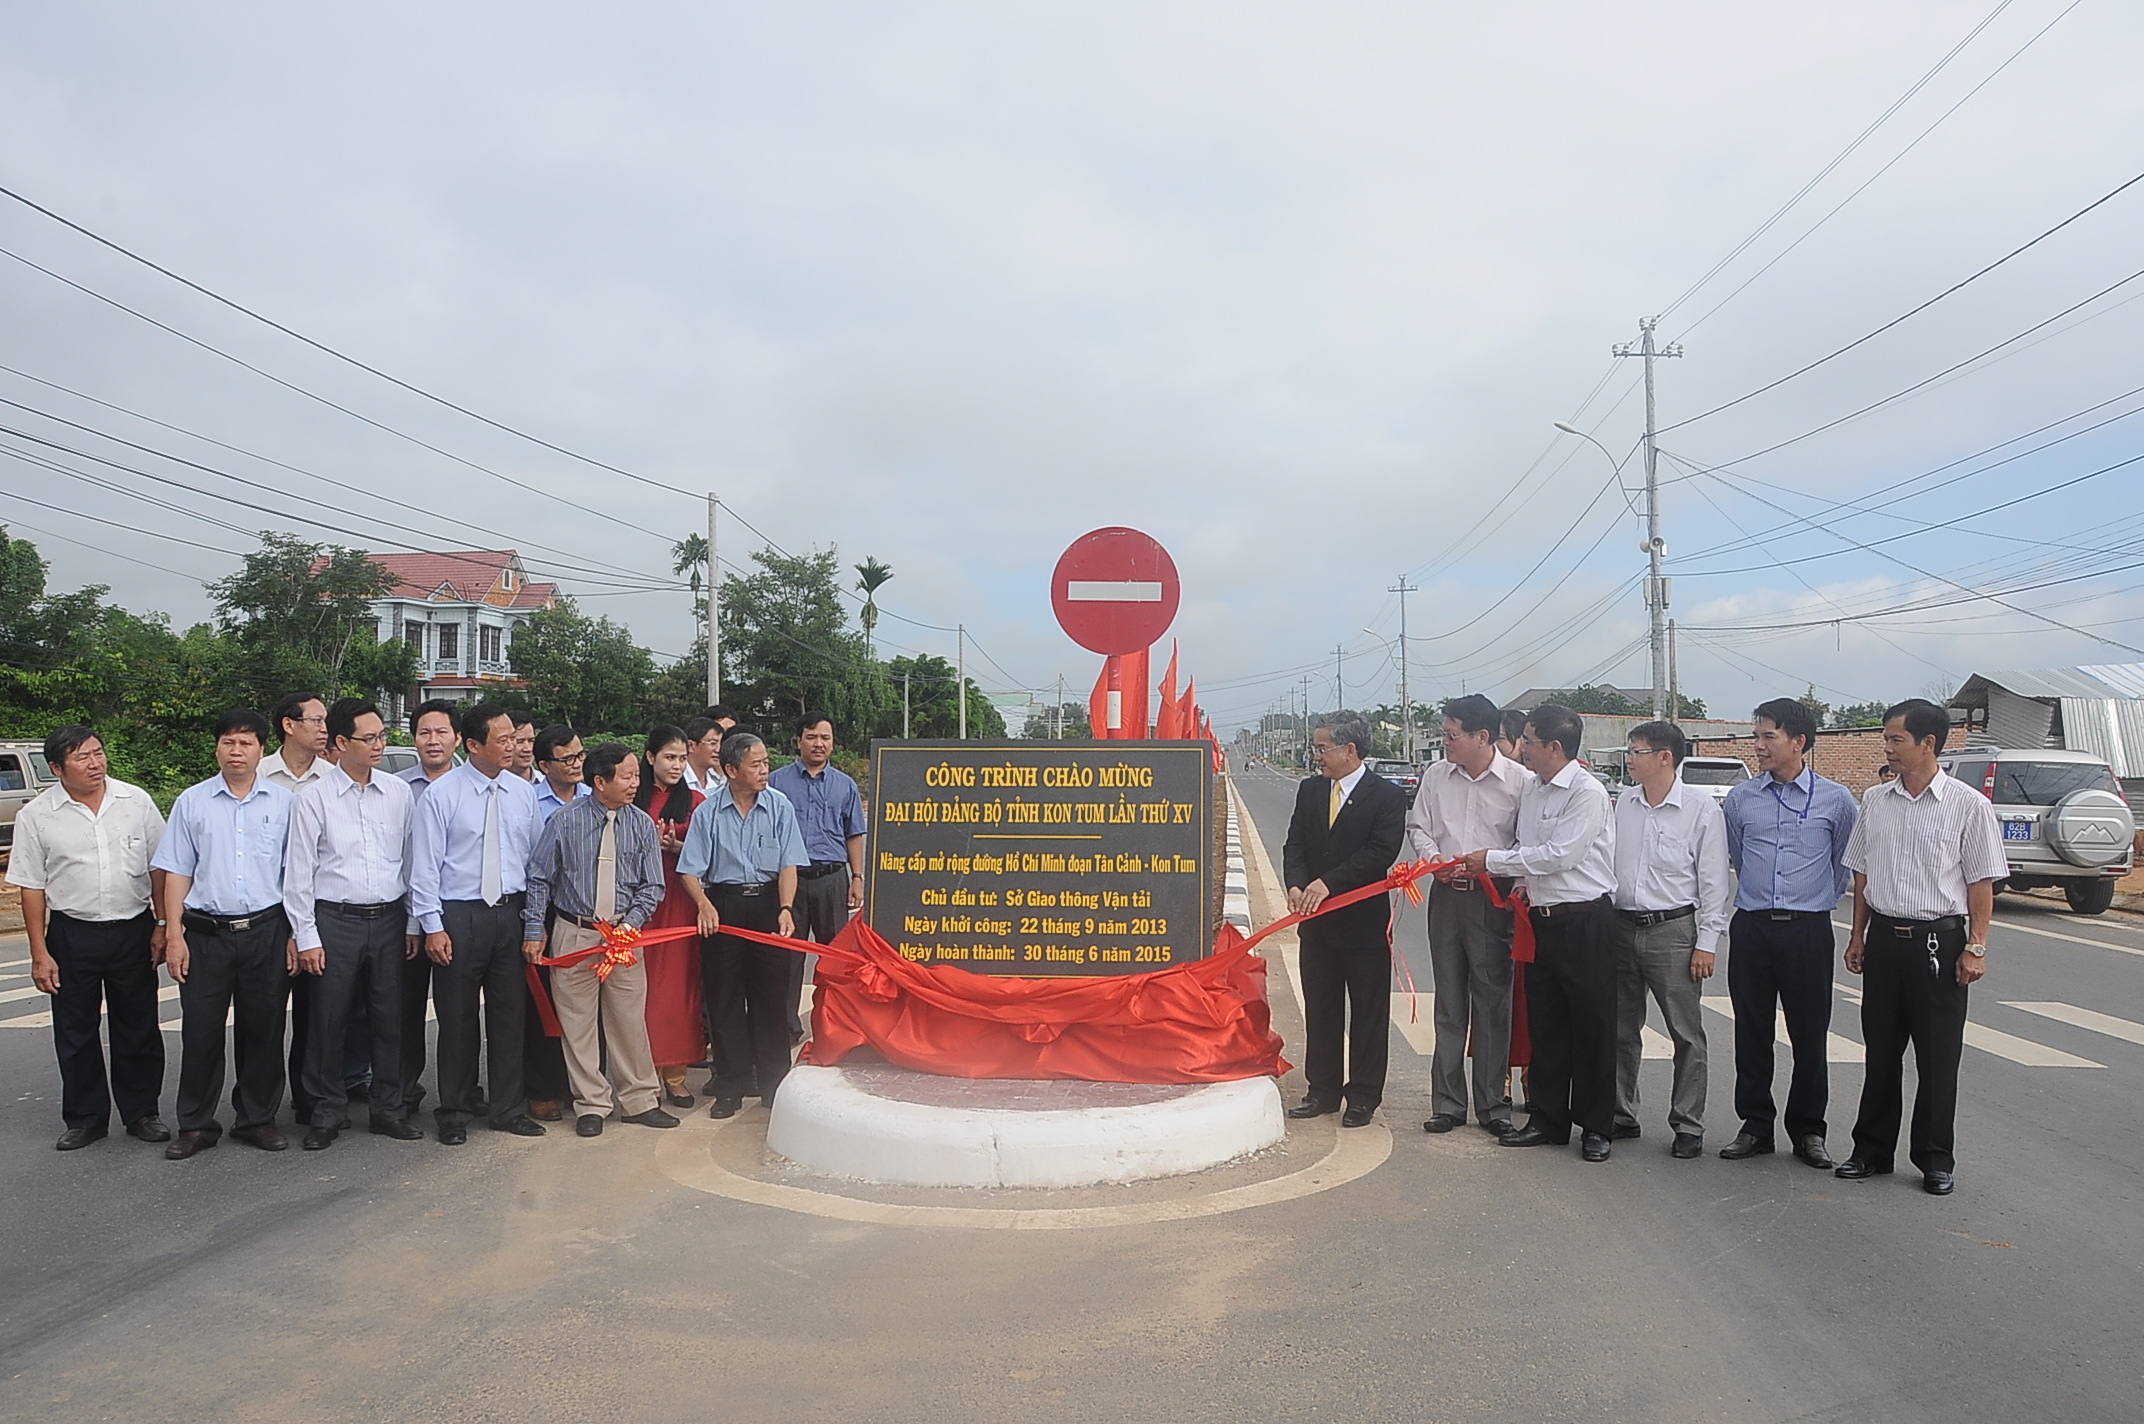 Lễ gắn biển công trình chào mừng Đại hội Đảng bộ tỉnh Kon Tum lần thứ XV